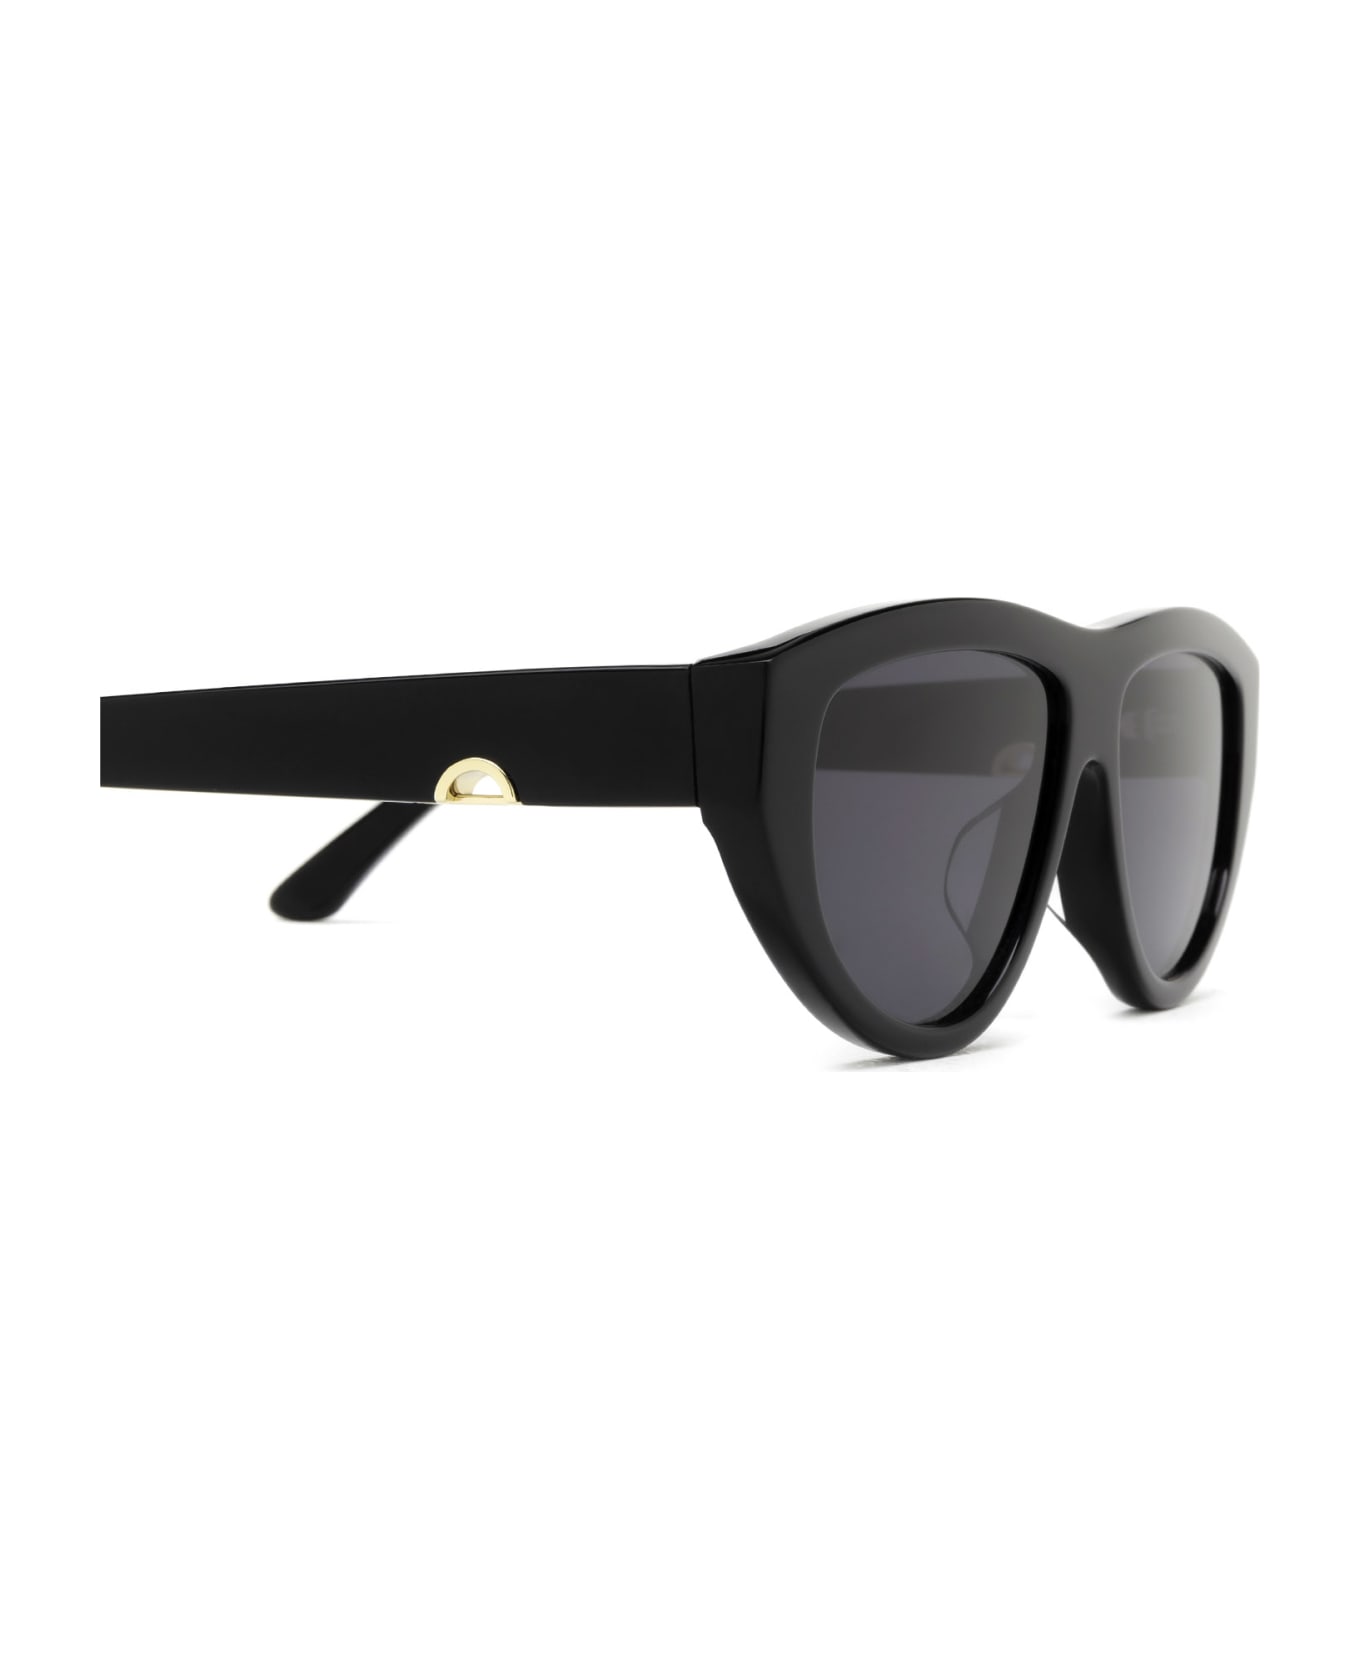 Huma Viko Black Sunglasses - Black